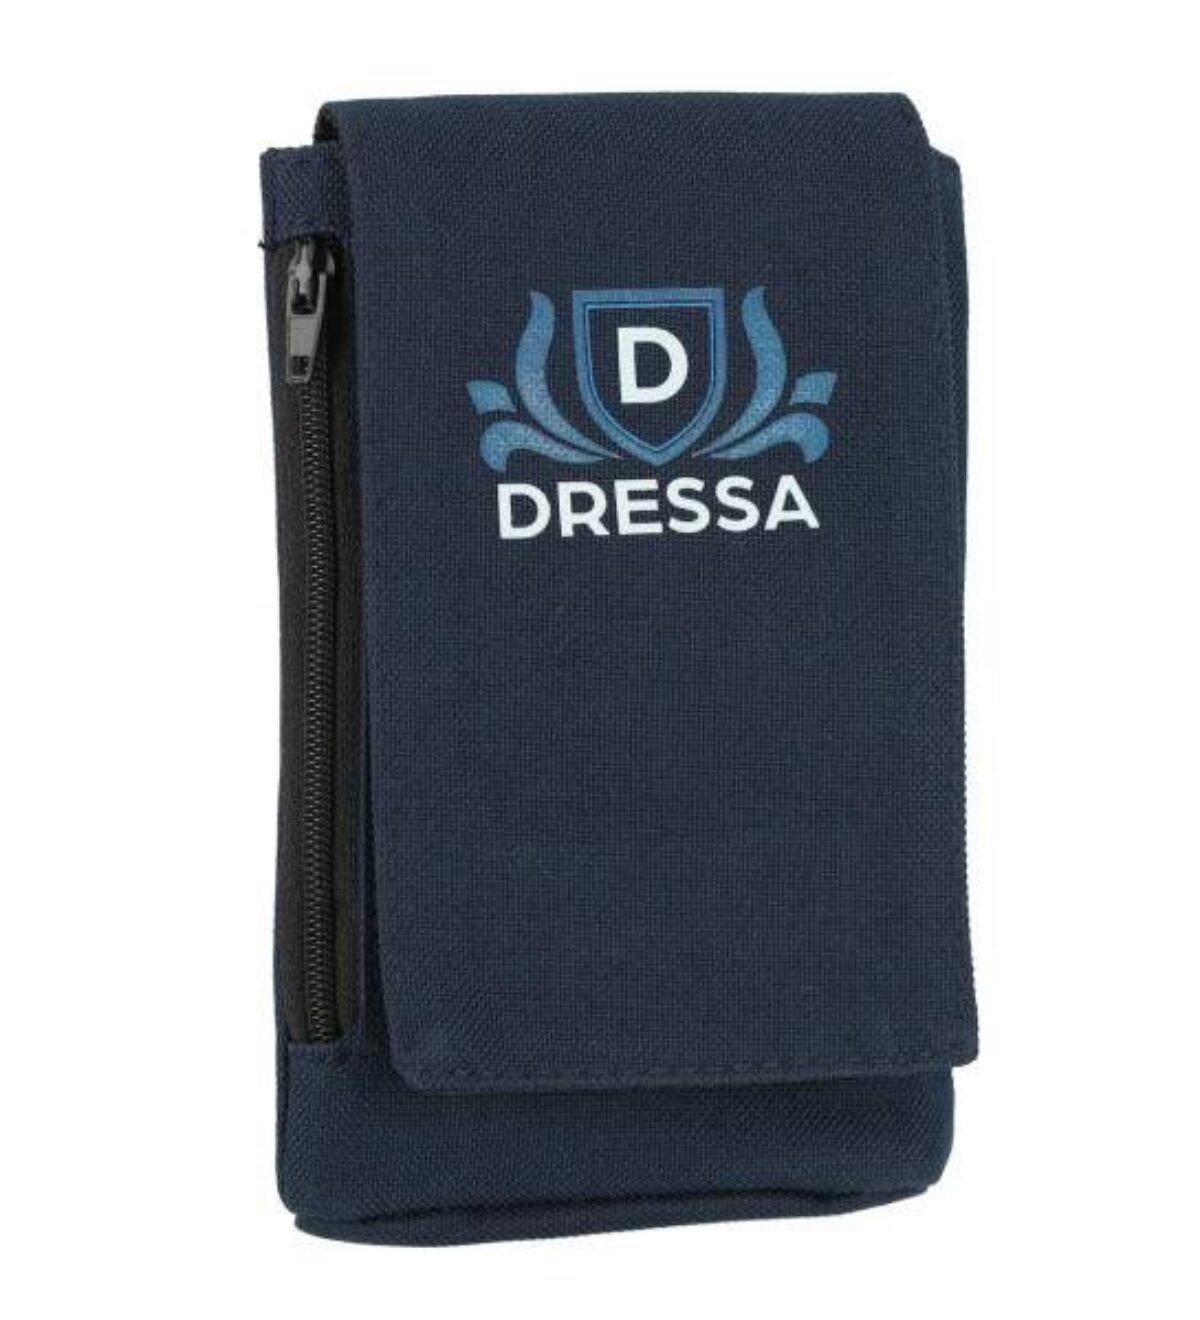 Dressa Phone nyakba akasztható övre fűzhető univerzális telefontok - sötétkék_d146716_Mirunska.com